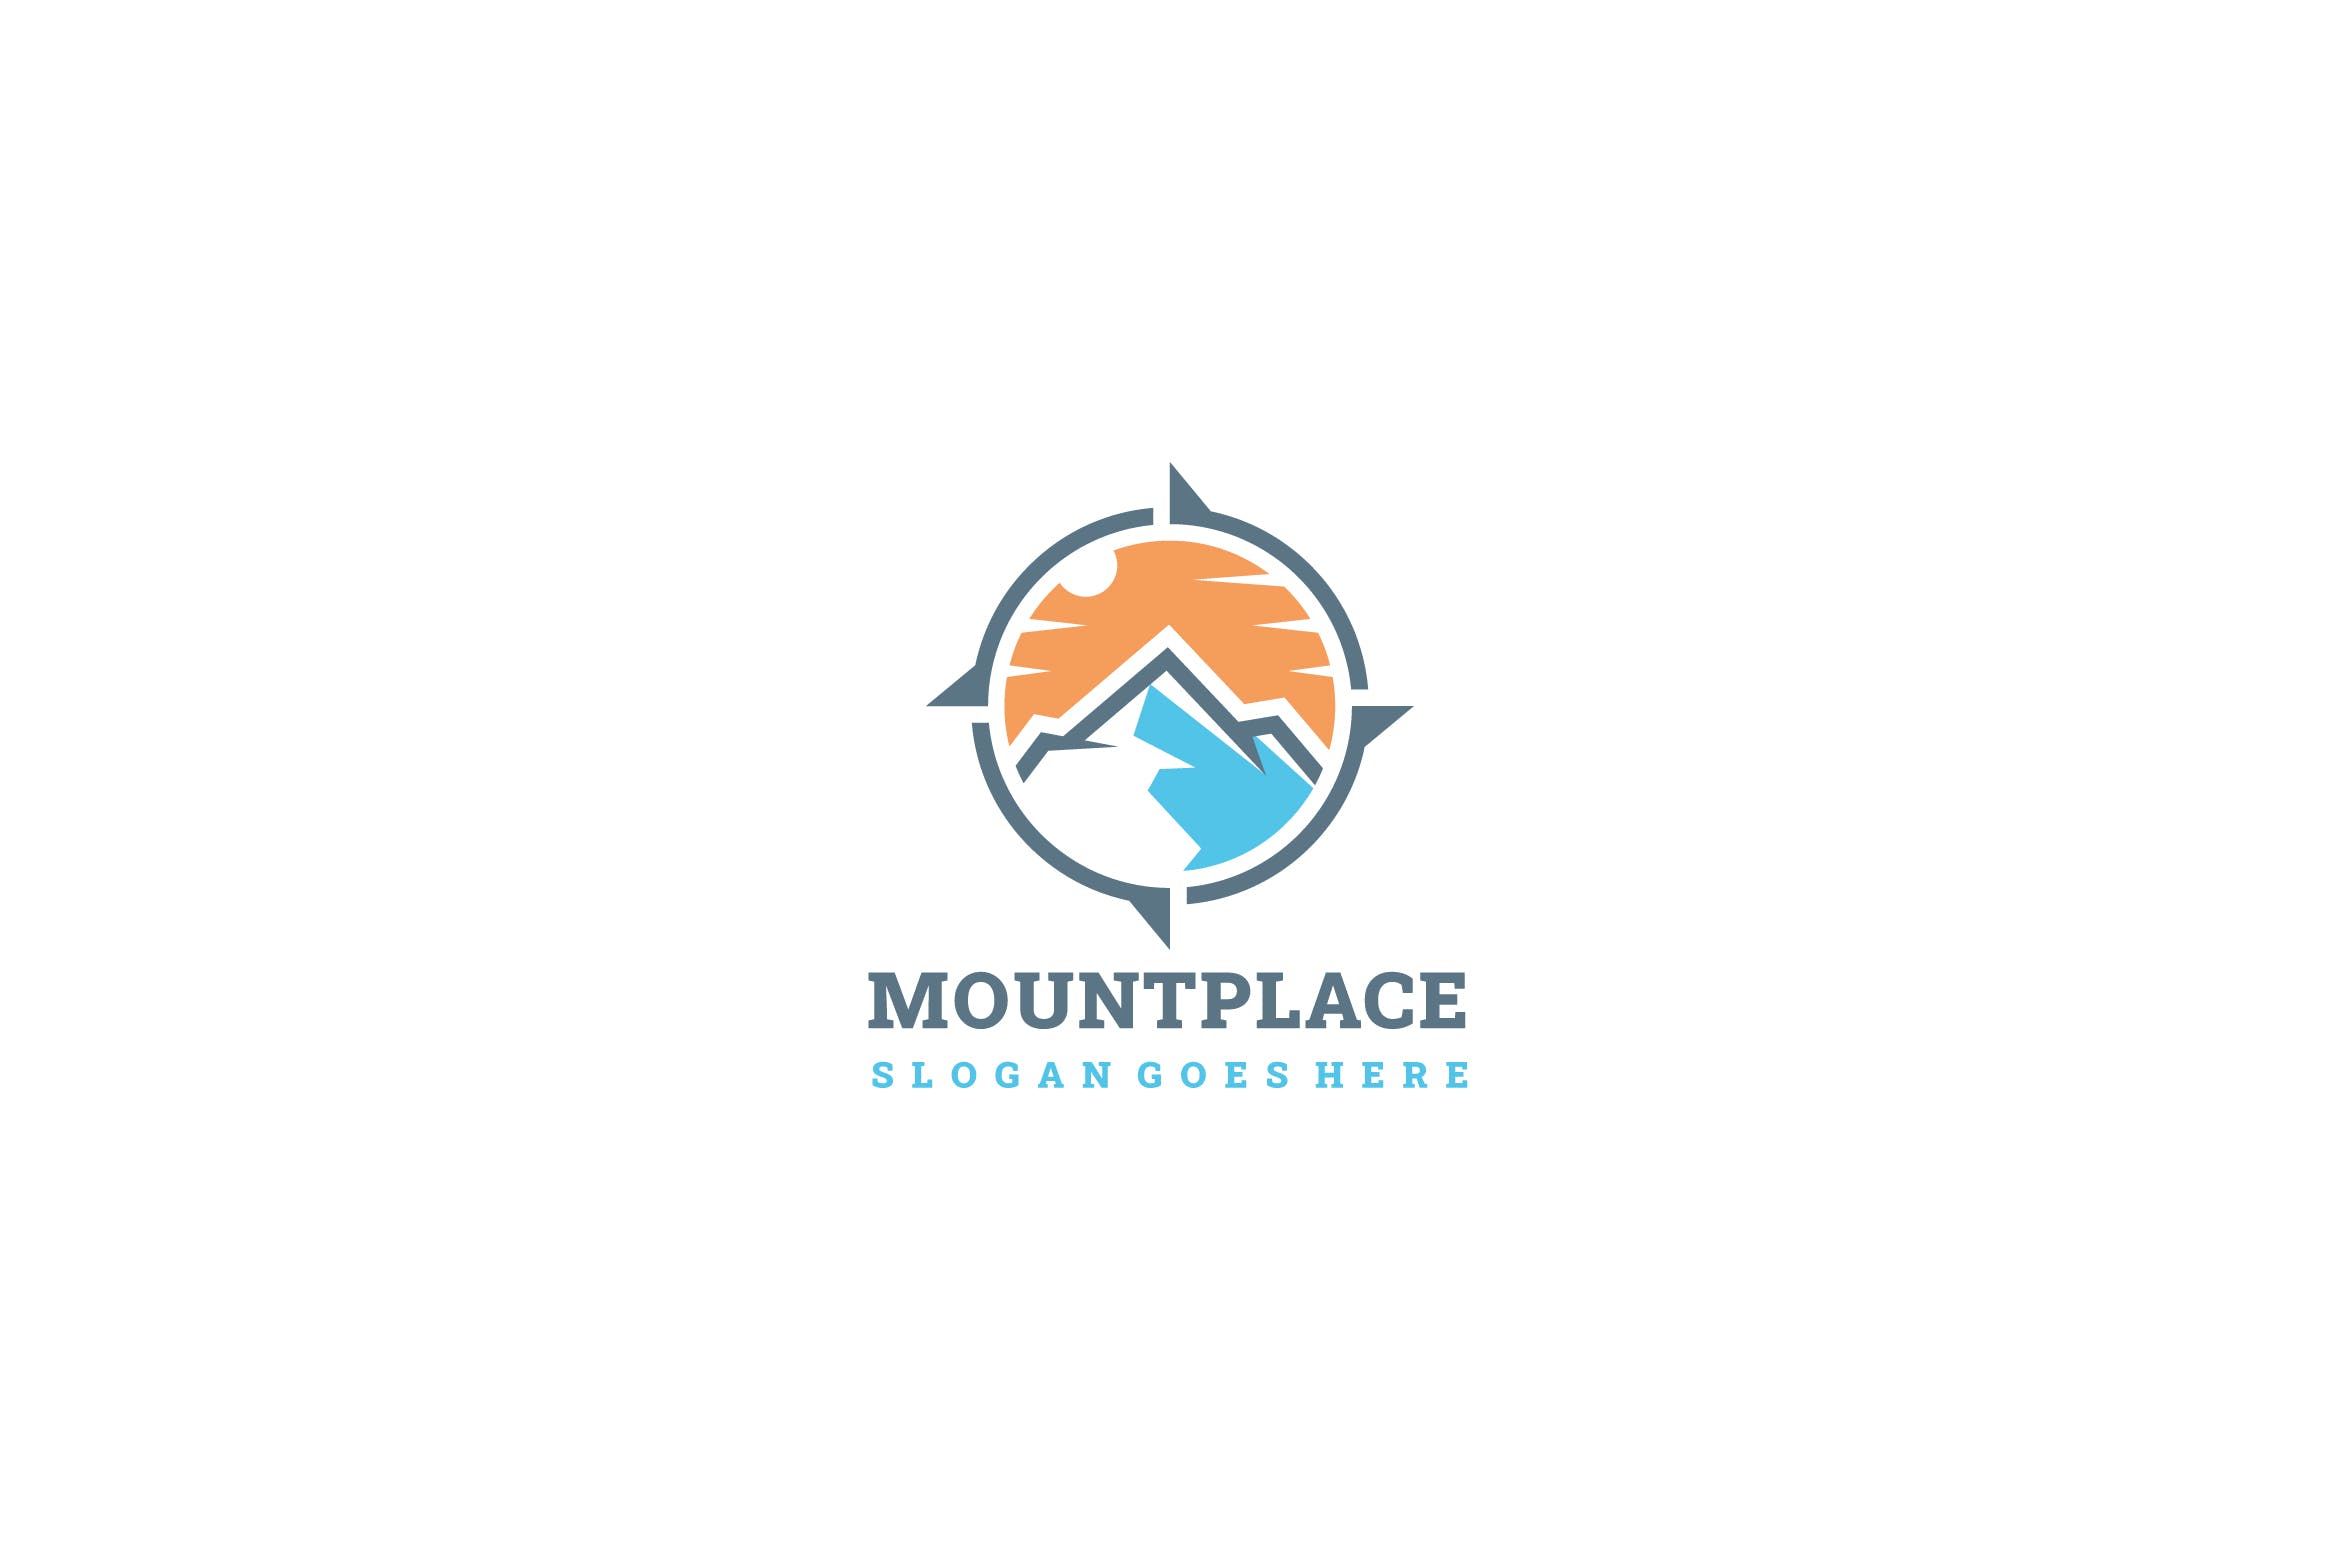 日落西山山脉图形Logo设计第一素材精选模板v1 Mountain Places Logo插图